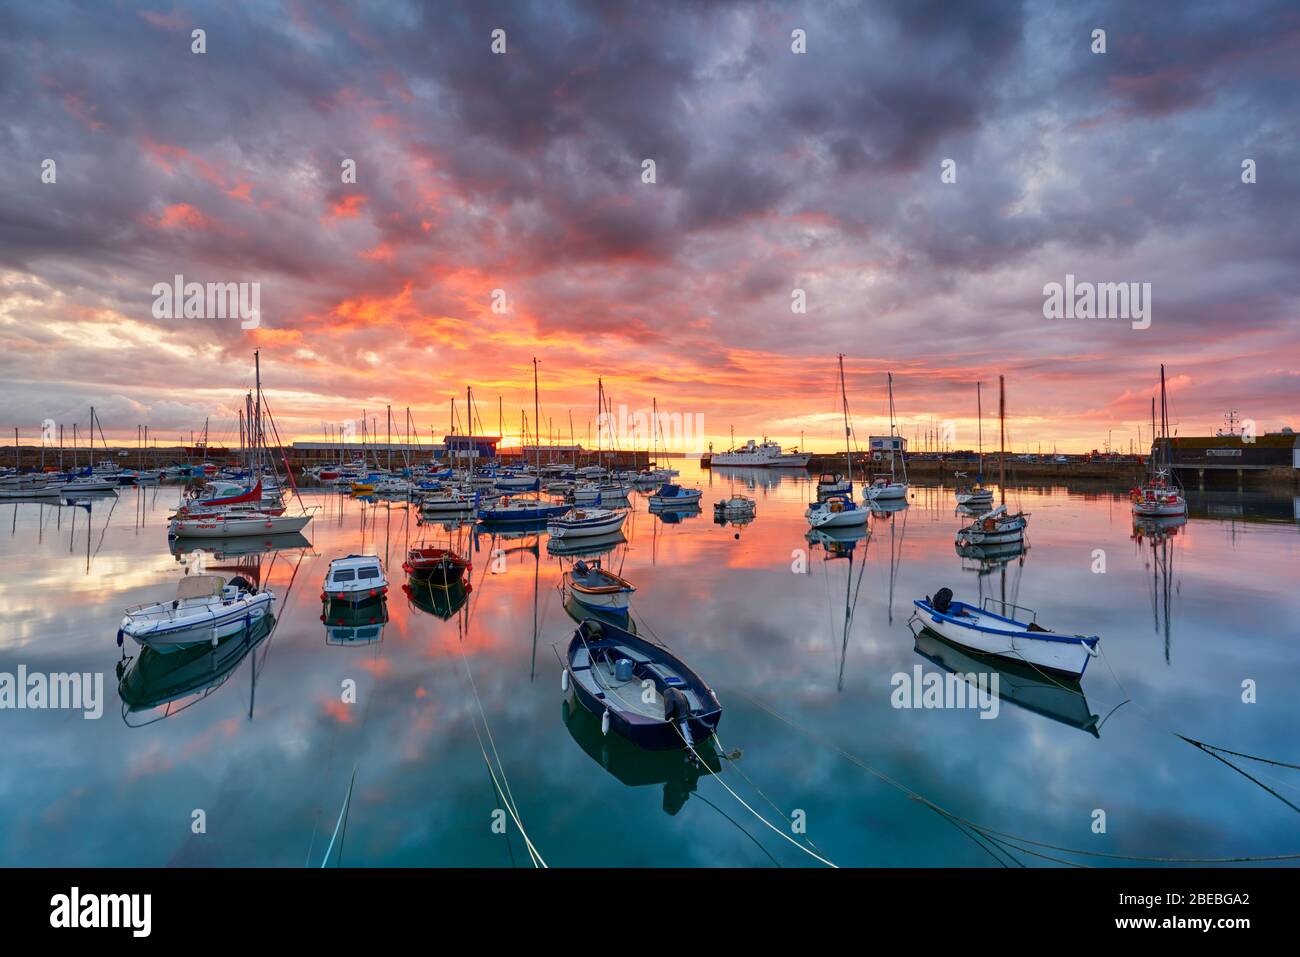 Un magnifique ciel d'aube au-dessus du port de Penzance et de la baie des monts, Cornwall Banque D'Images